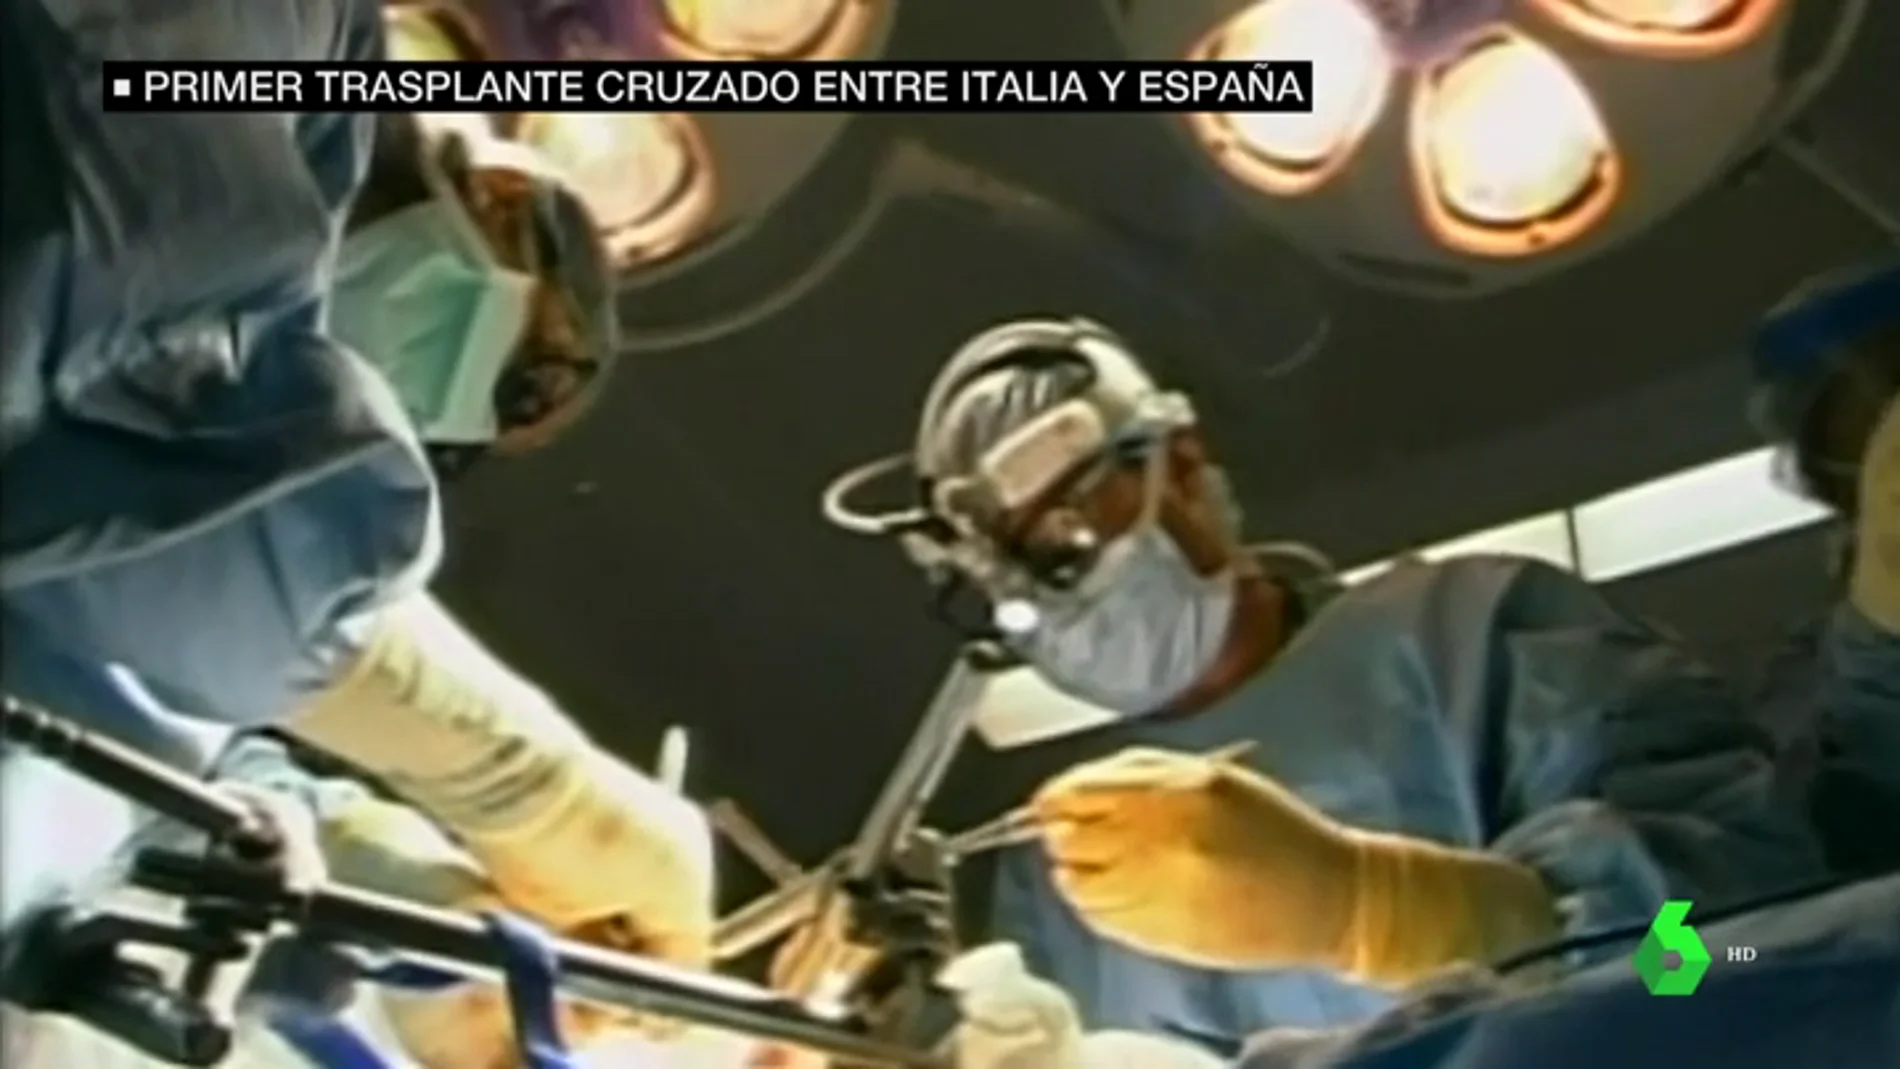 El trasplante de riñón ya no tiene fronteras en España: se realiza con éxito una operación cruzada internacional